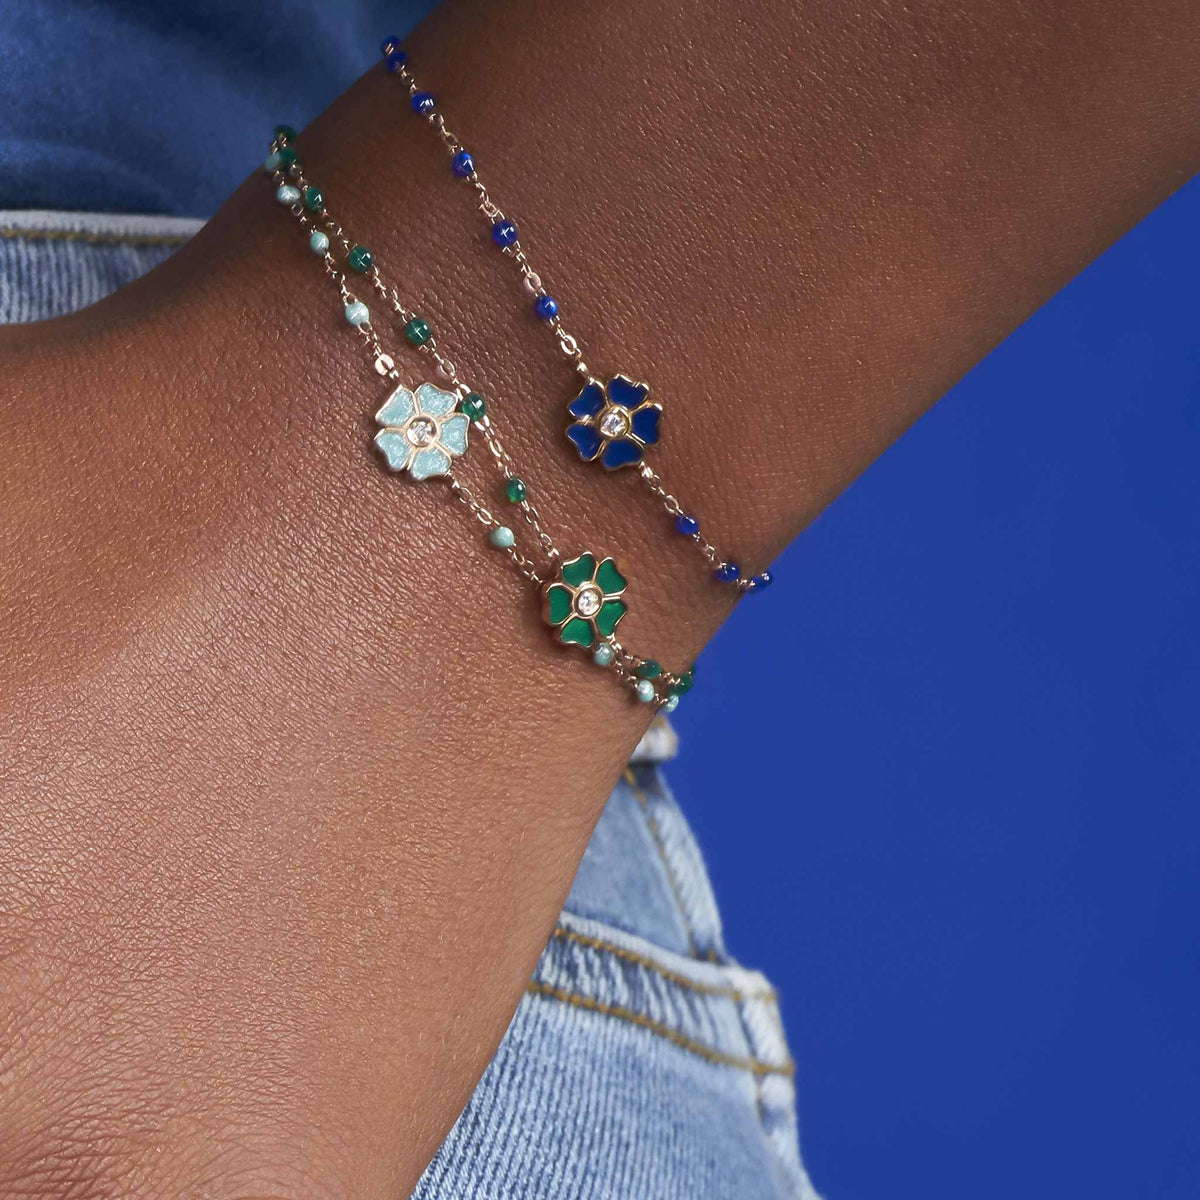 Louis Vuitton Color Blossom Star Bracelet